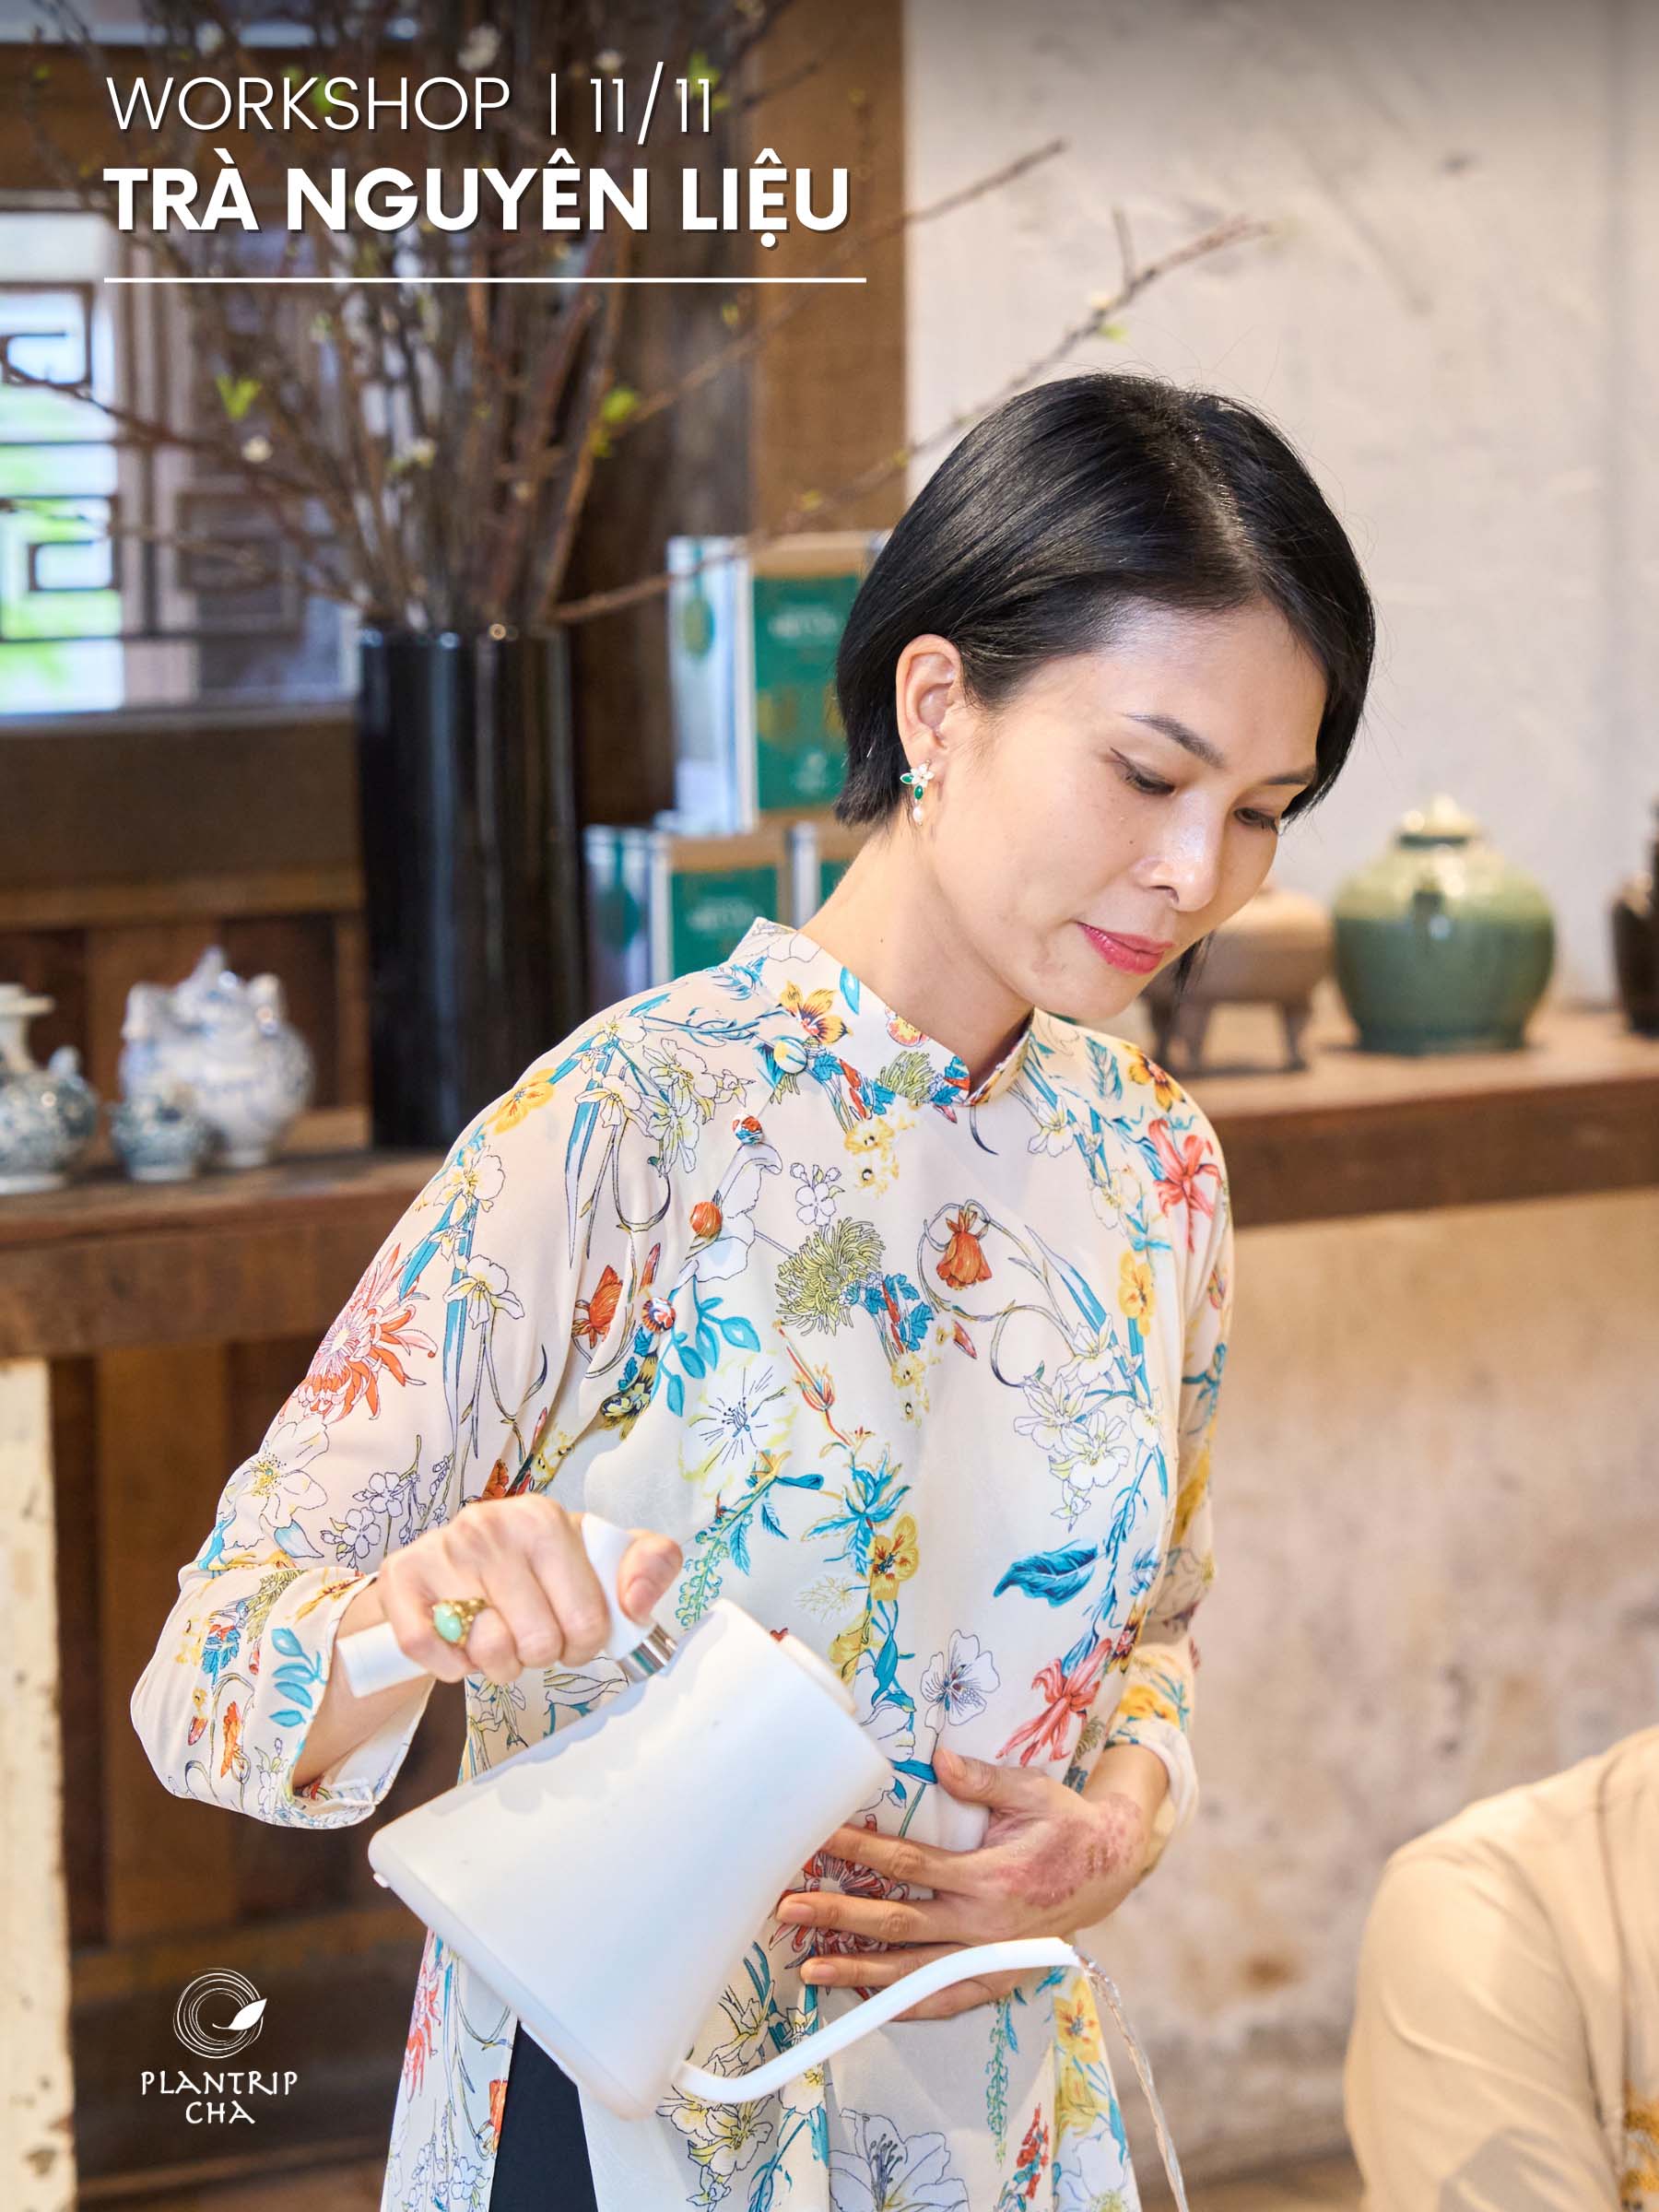 Tea specialist Kim Thanh sẽ trực tiếp chia sẻ về trà trong buổi workshop